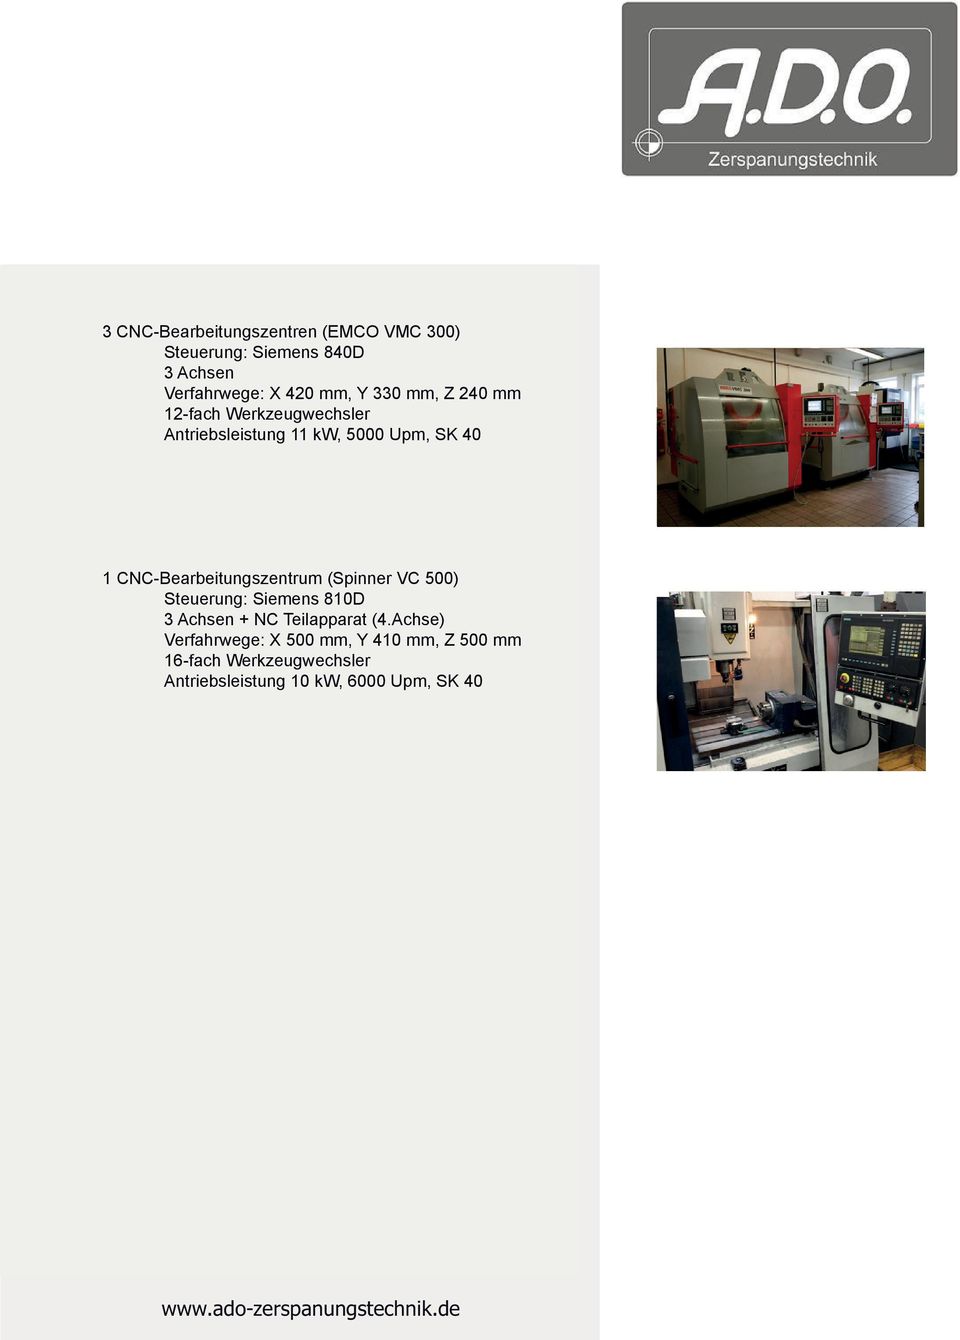 CNC-Bearbeitungszentrum CNC-rehmaschinen (Spinner (Spinner TC 52 VC 500) MC) Steuerung: Siemens 810 Max. 3 Achsen rehmaße + NC Teilapparat 280 mm (4.